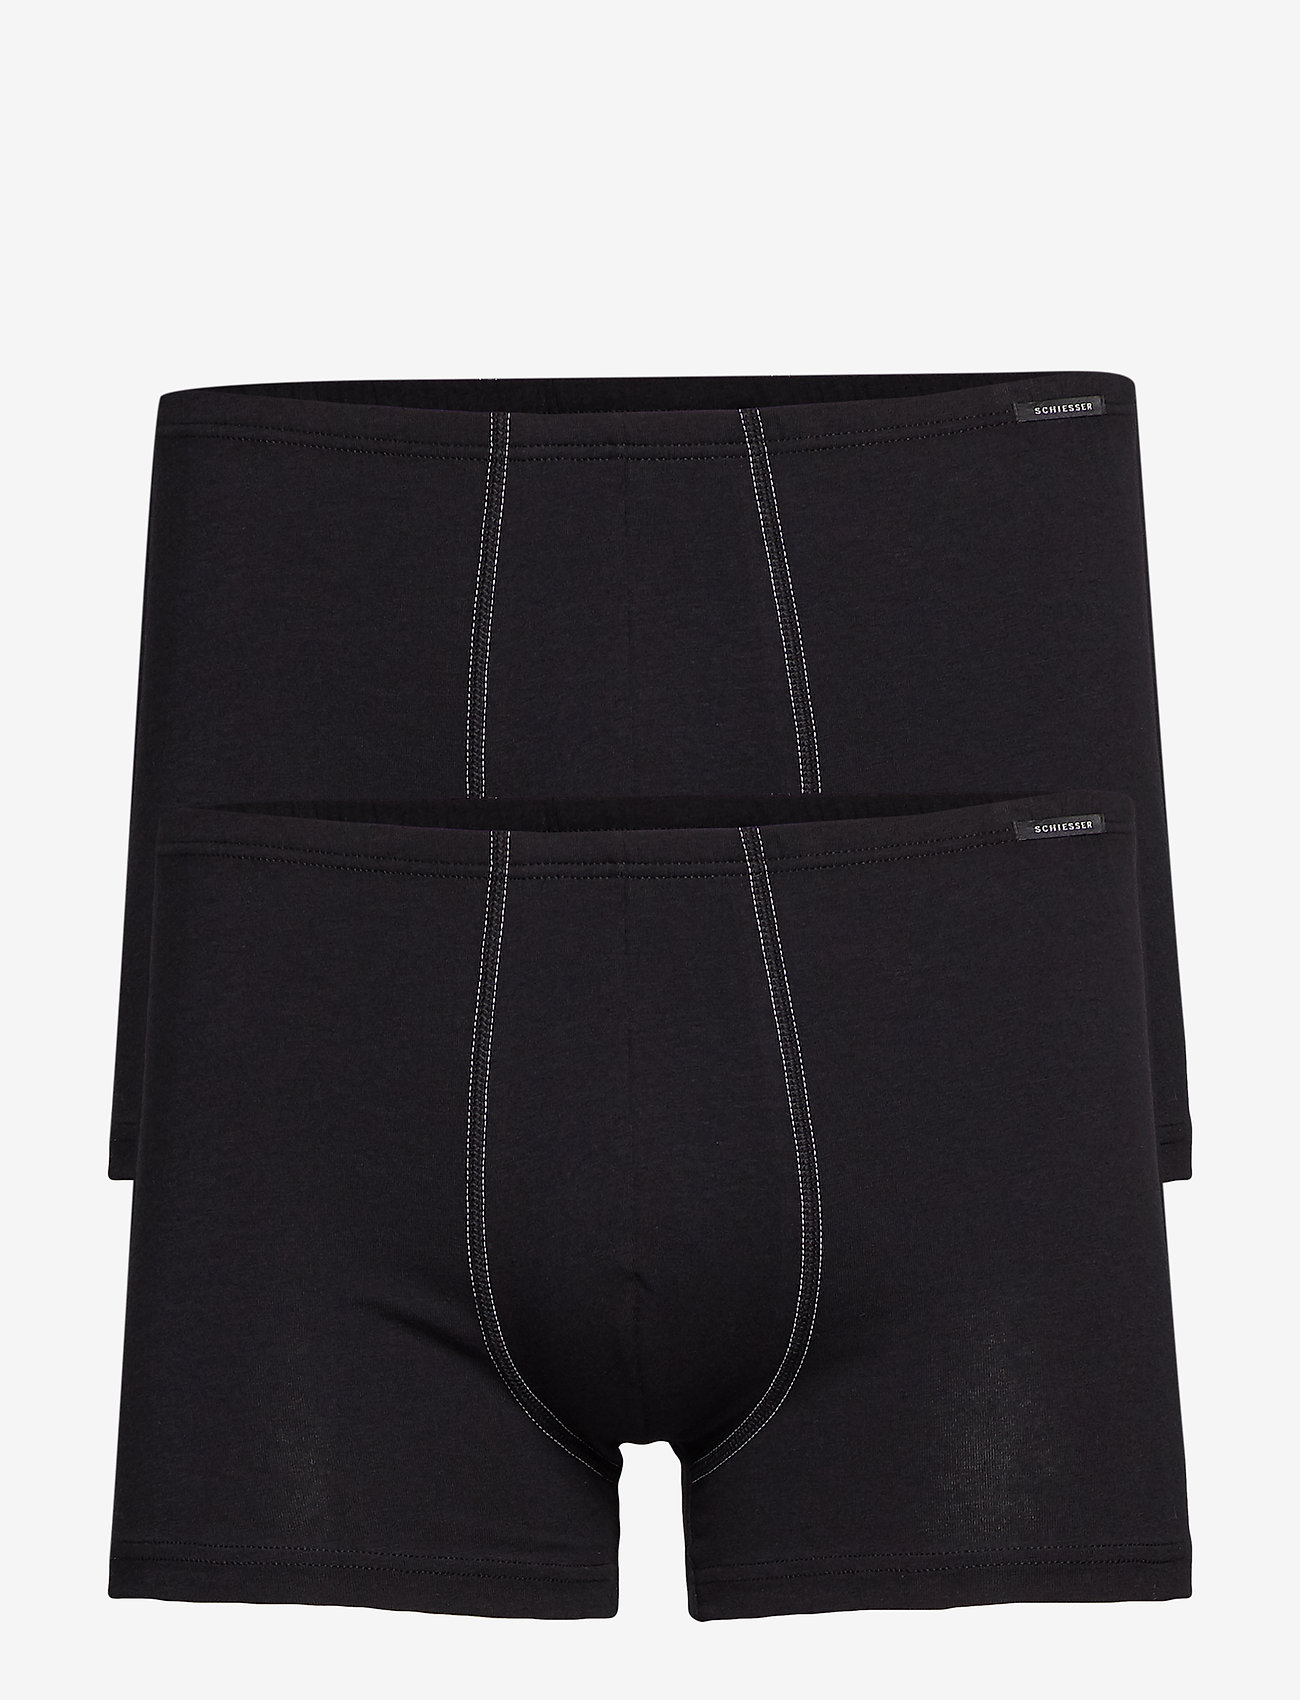 Schiesser - Shorts - lot de sous-vêtements - black - 0